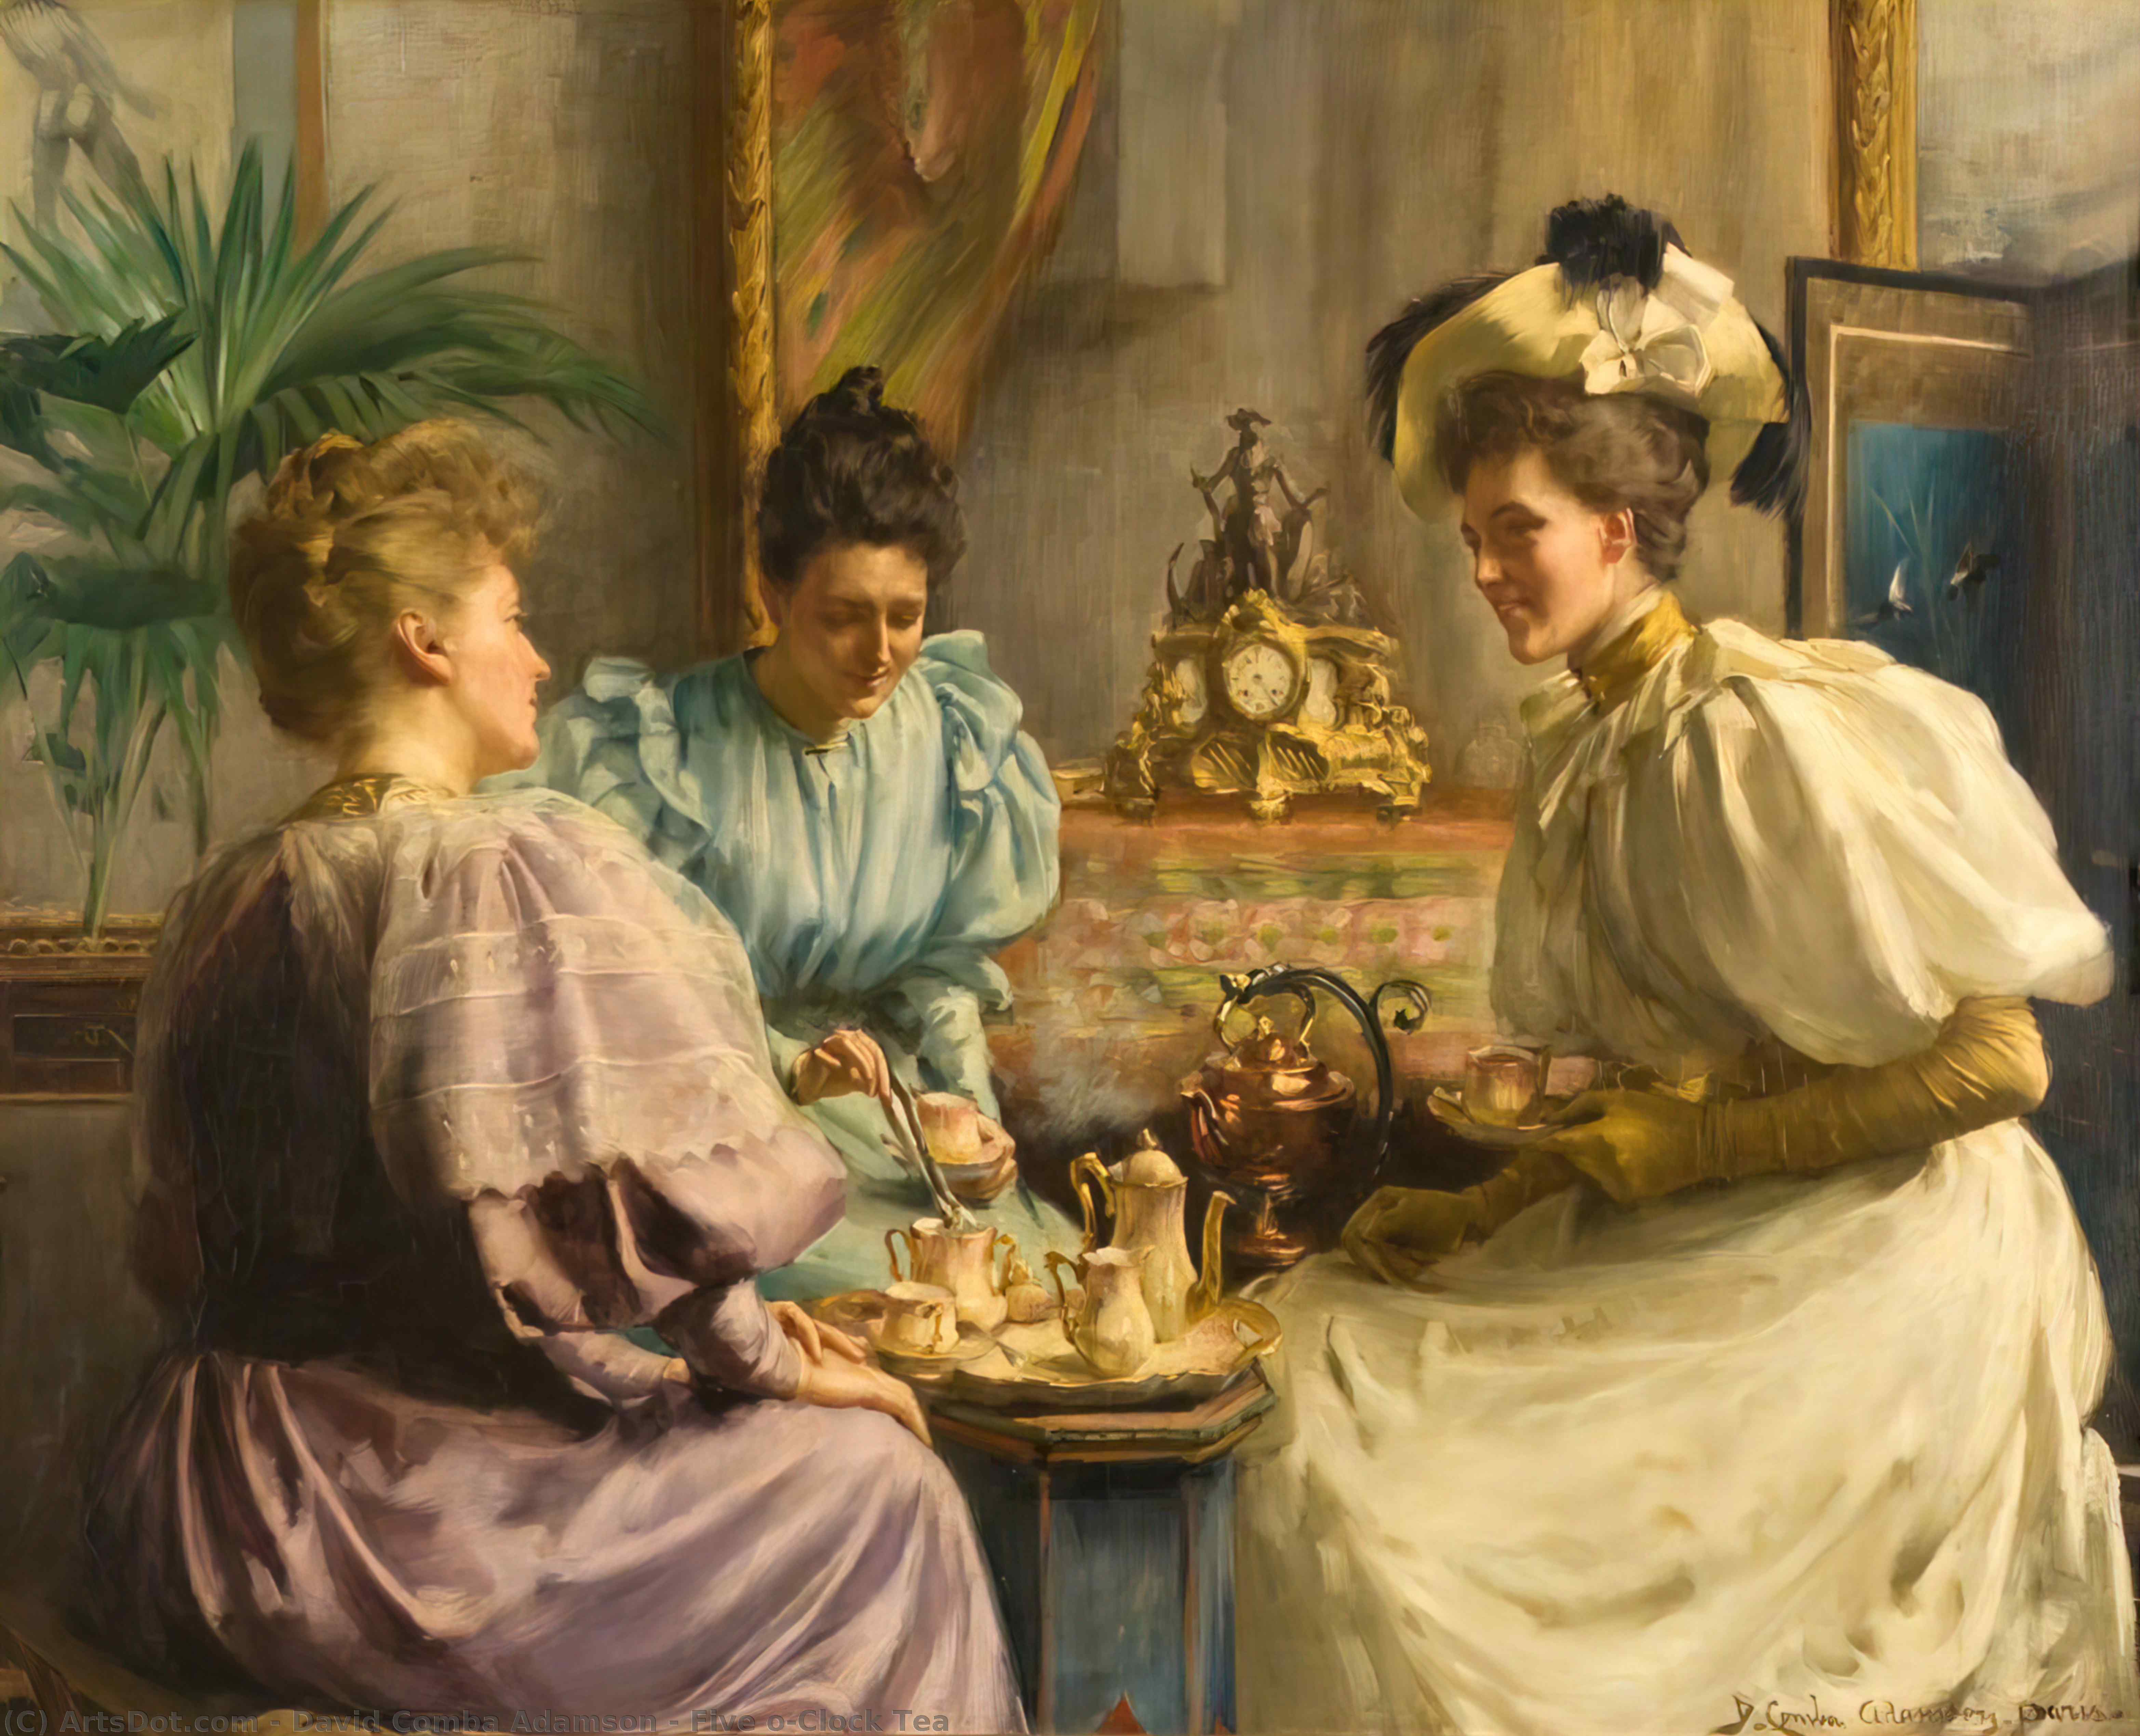 Урок чаепитие. Five o Clock Tea чаепитие в Великобритании. Английское Викторианское чаепитие 19 век. Чаепитие Англия 19 век.